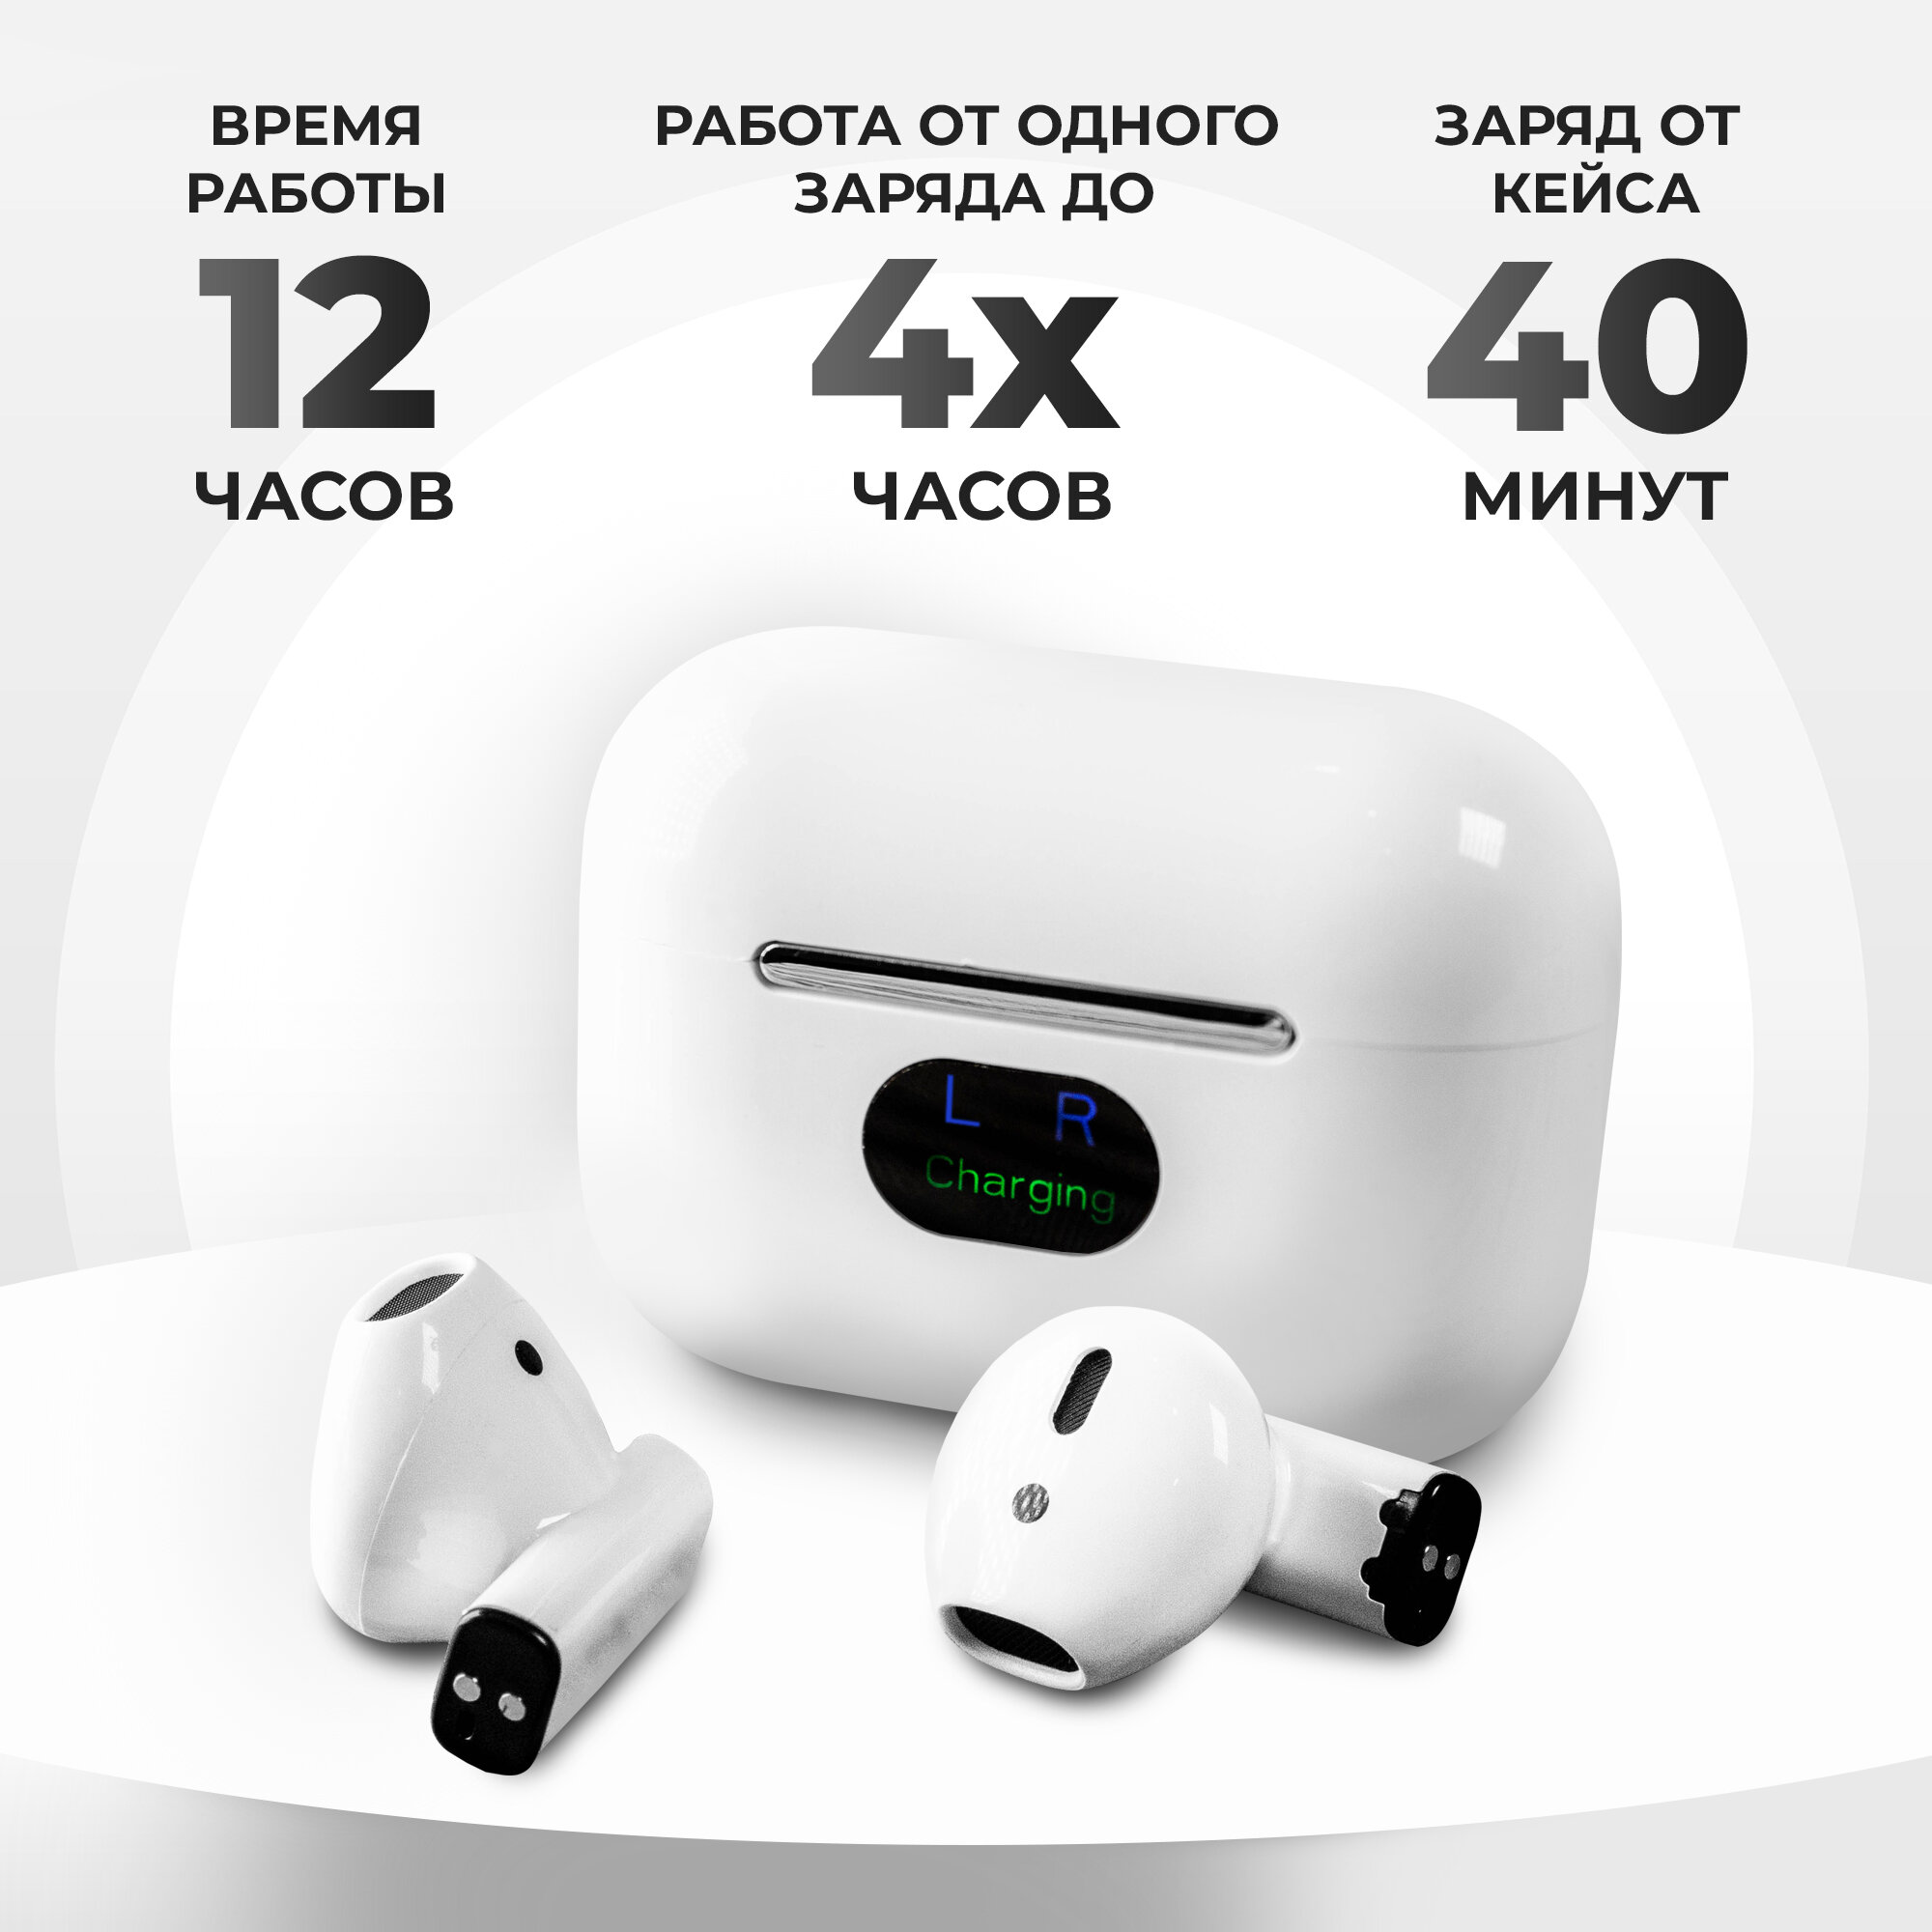 Беспроводные наушники мини Bluetooth с микрофоном, сенсорное управление, индикатор заряда, WALKER, WTS-53, гарнитура TWS для телефона Android, белые